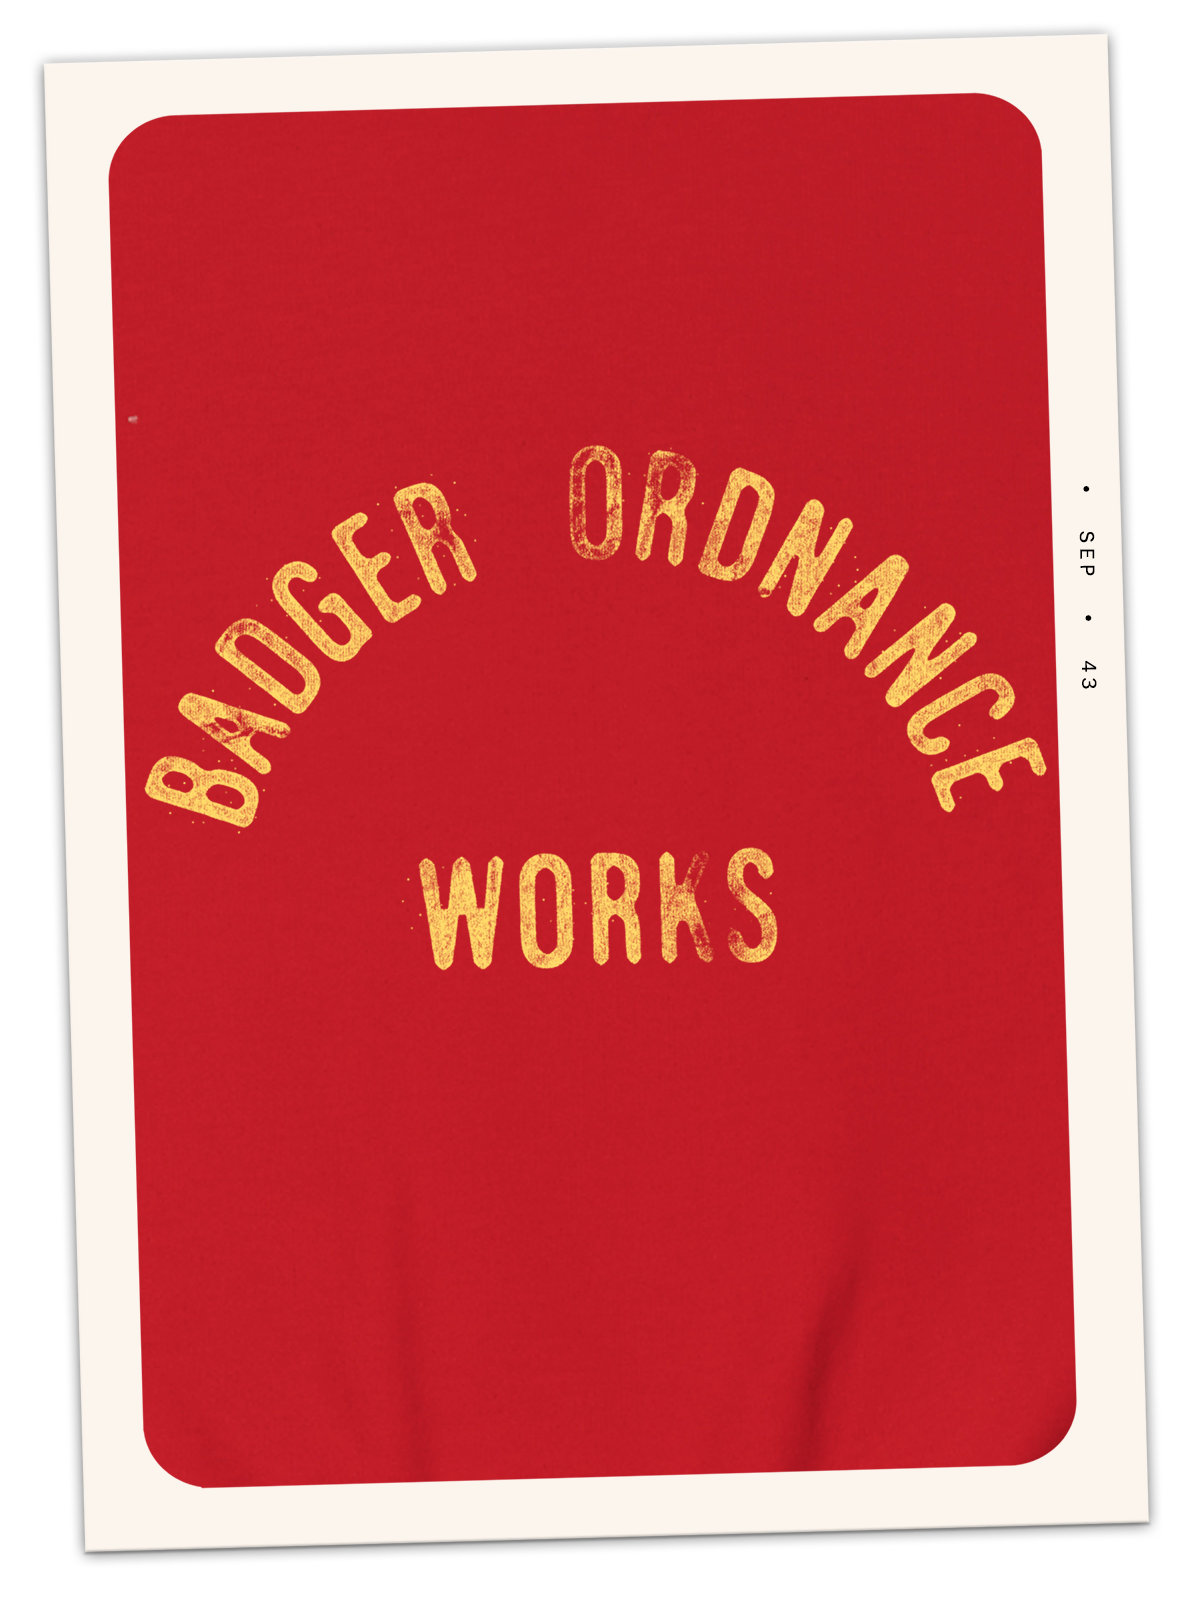 Badger Ordnance Works Adult Crewneck Sweatshirt